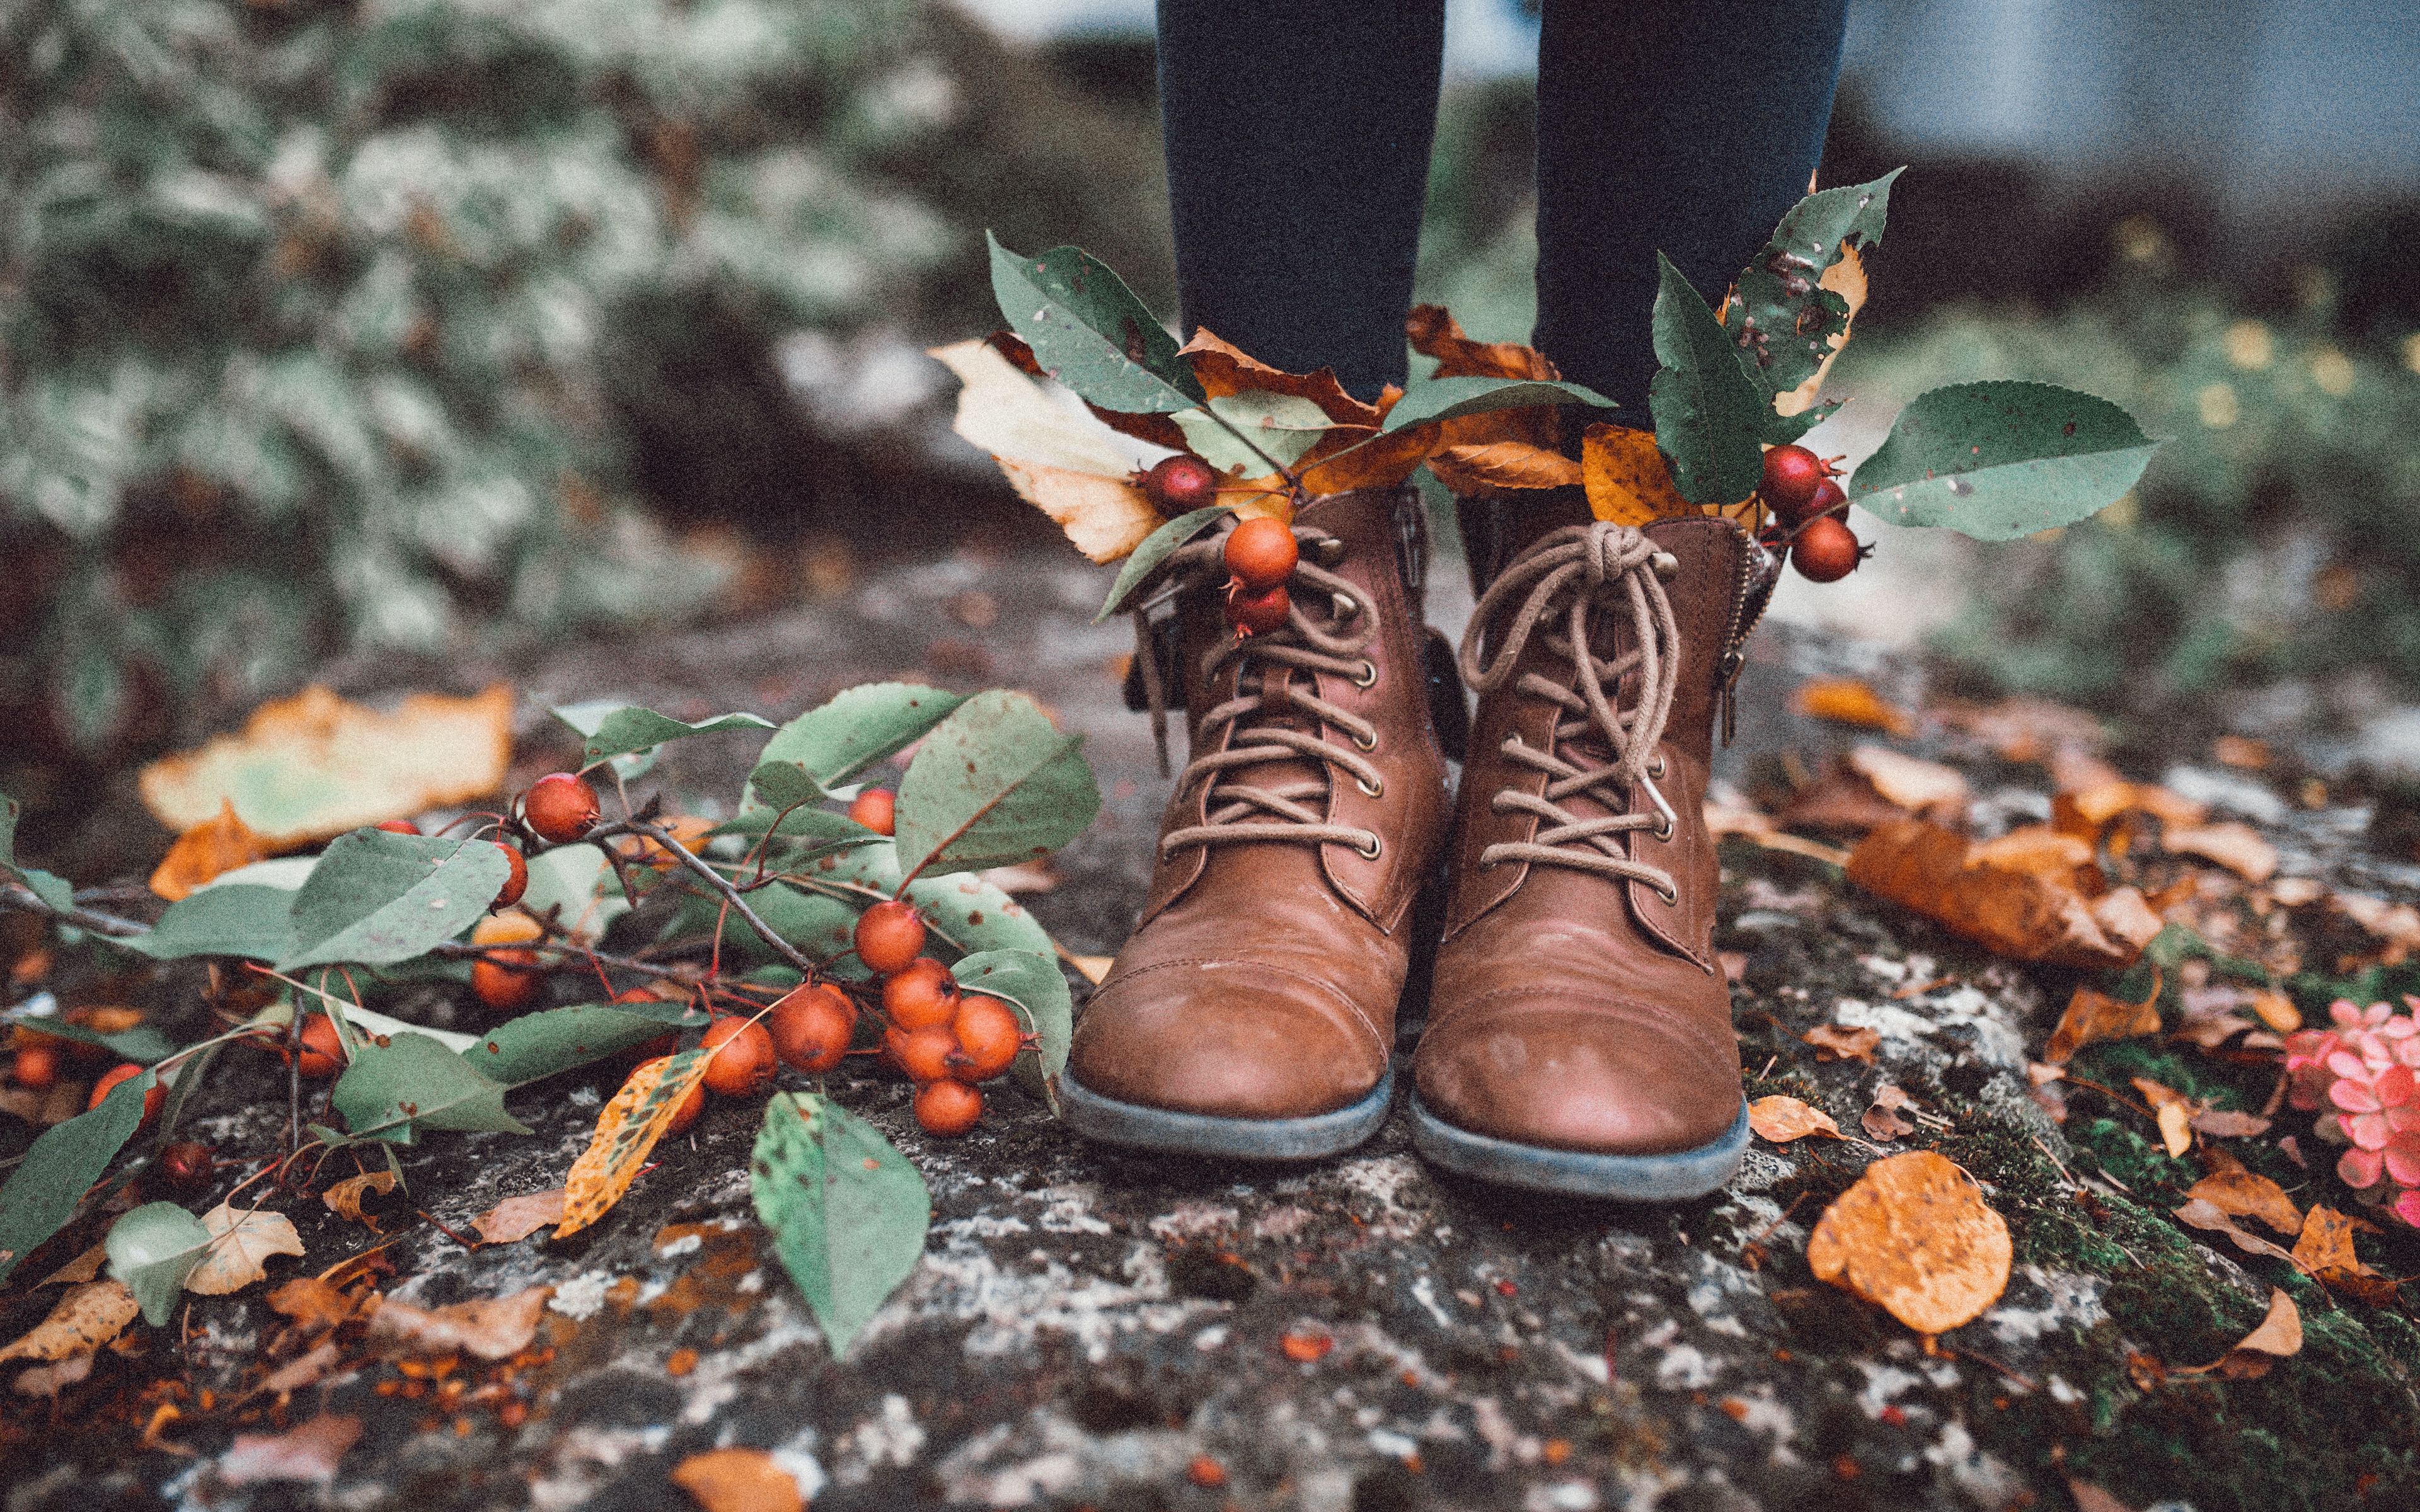 Обувь в осенних листьях